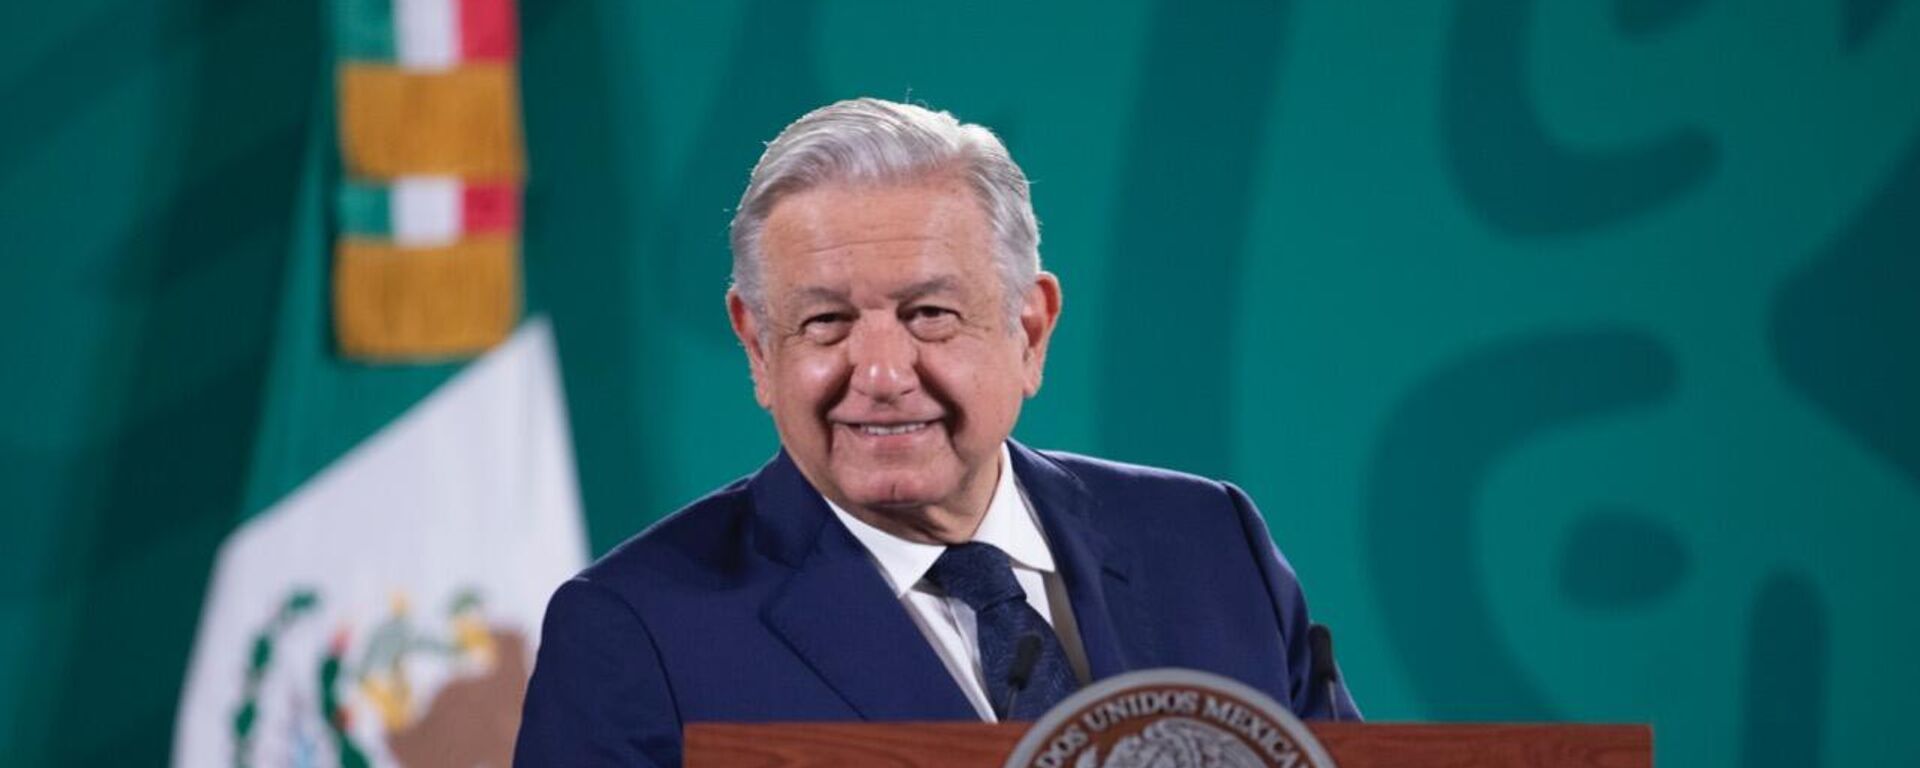 Andrés Manuel López Obrador, presidente de México - Sputnik Mundo, 1920, 22.09.2021